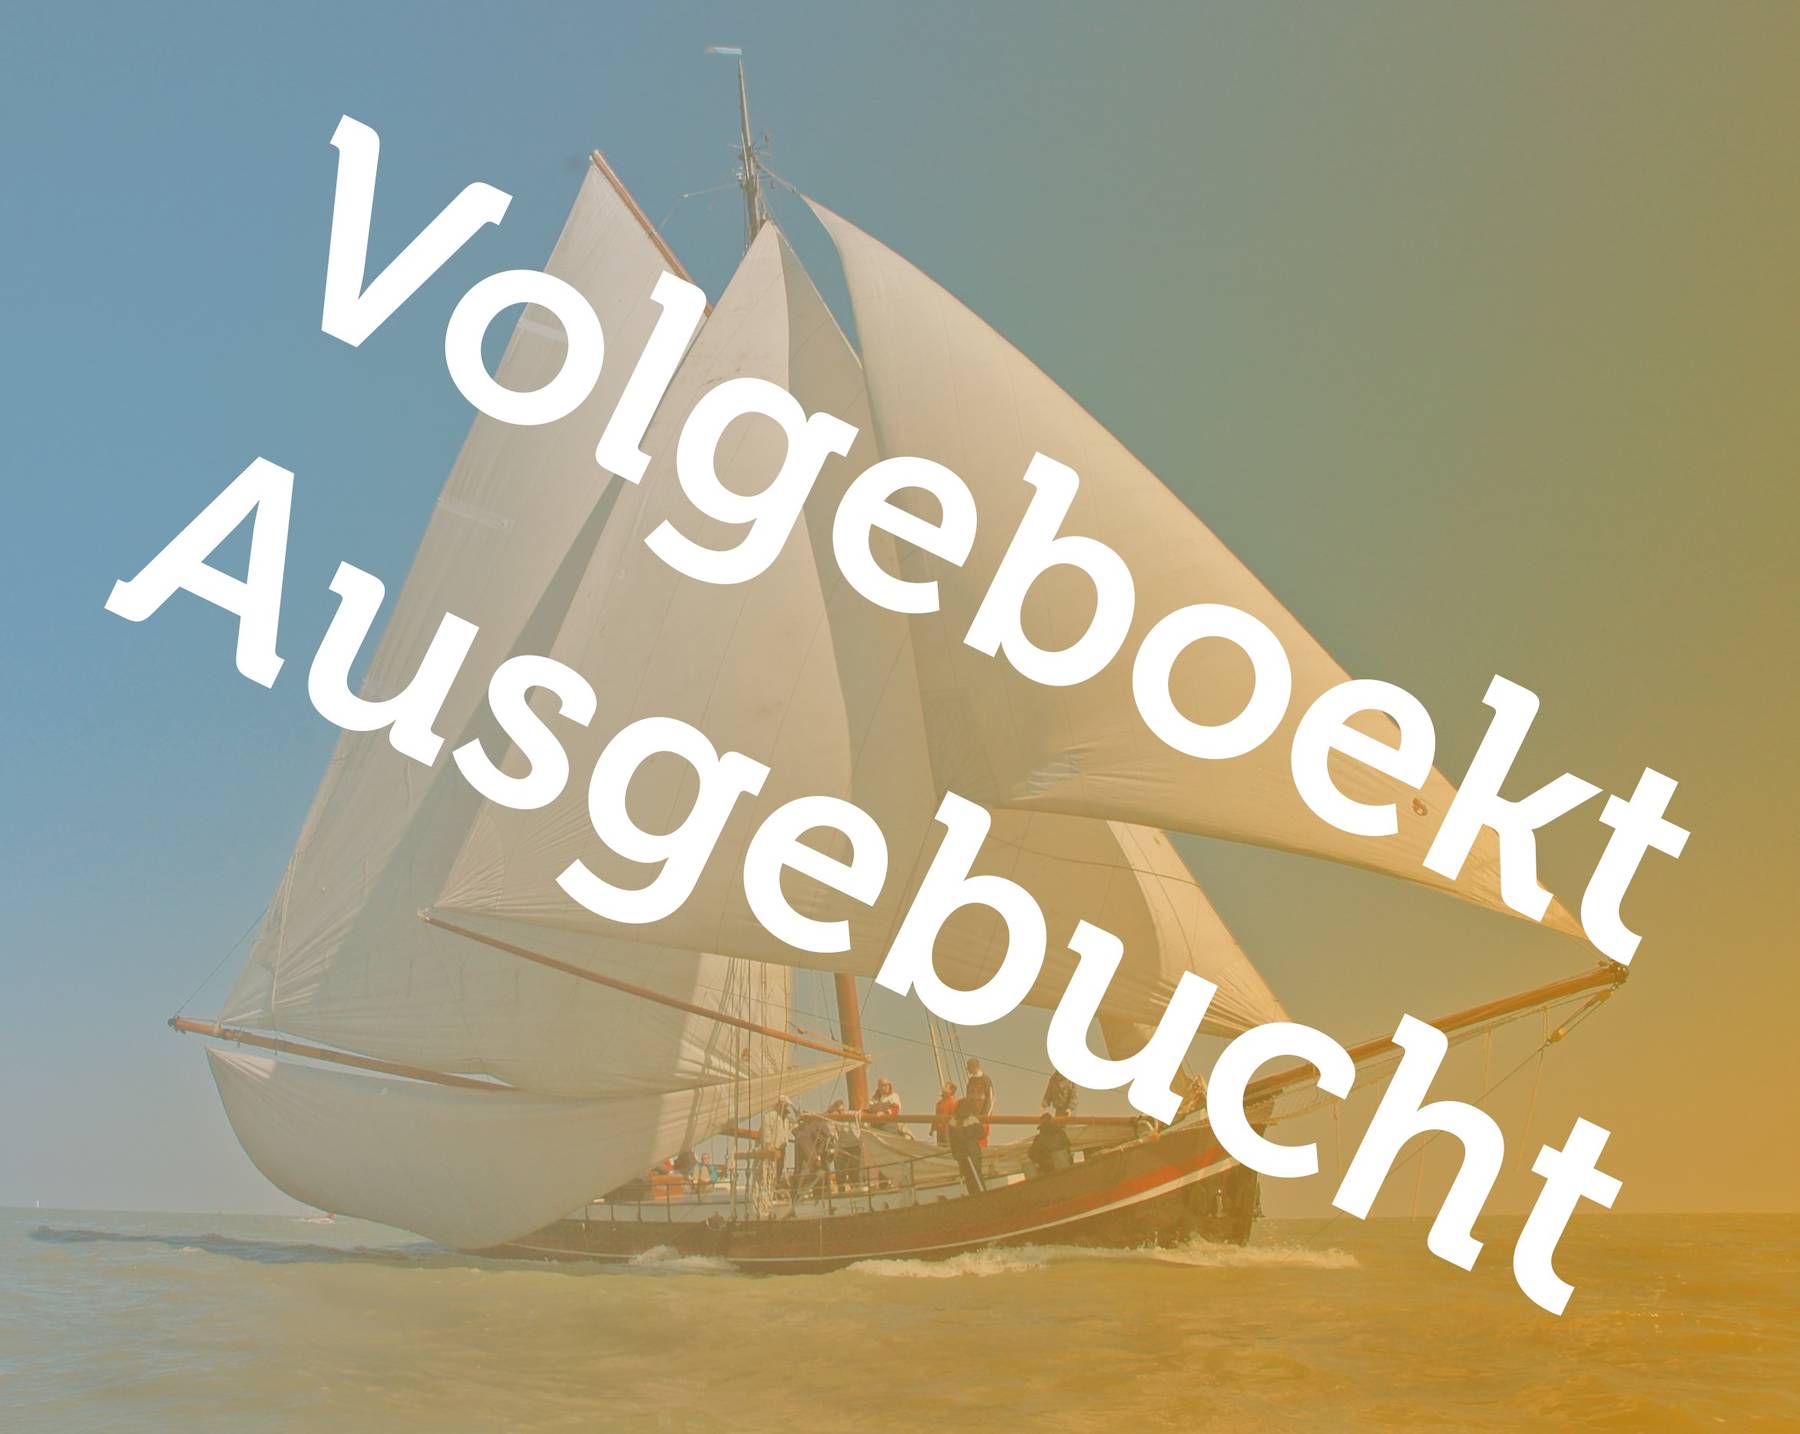 6-daagse (18+) zeilvakantie aan boord van La Boheme vanuit Enkhuizen op het IJsselmeer en Waddenzee 